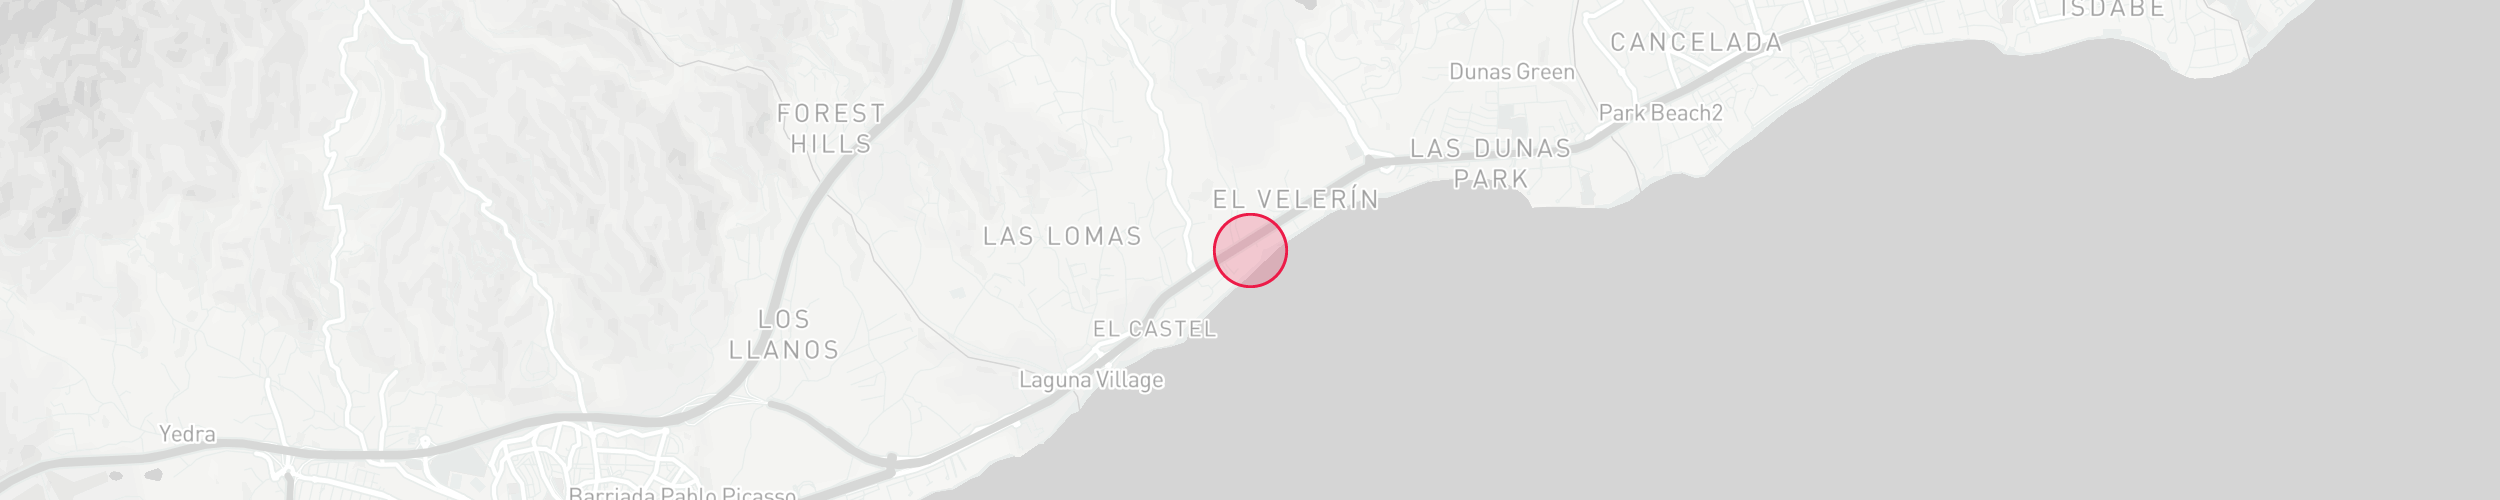 Mapa de localización de la propiedad - Bahía del Velerín